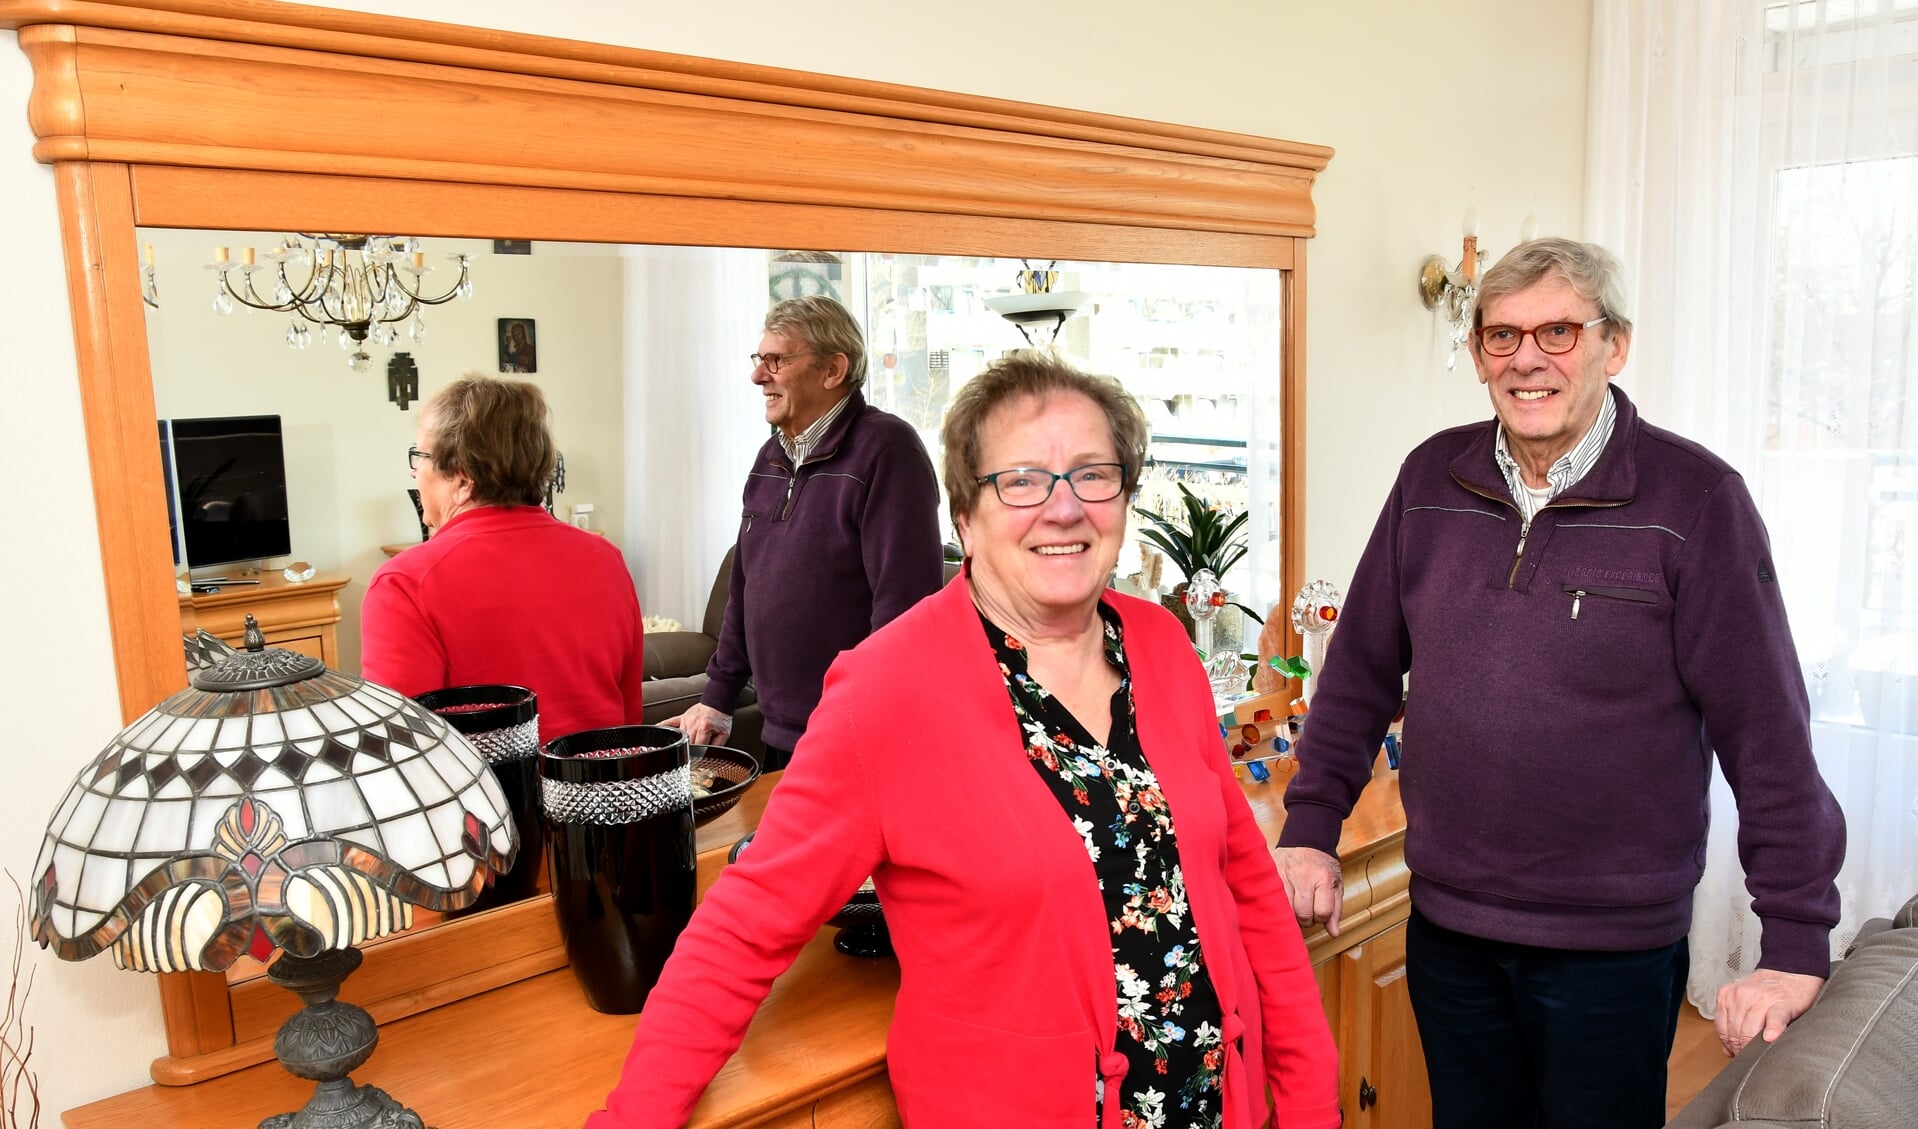 De meubelen en lampen in het huis van Carla en Arie Booman zijn met enorm veel liefde gemaakt door Poolse handwerklieden als dank voor veertig jaar hulp.